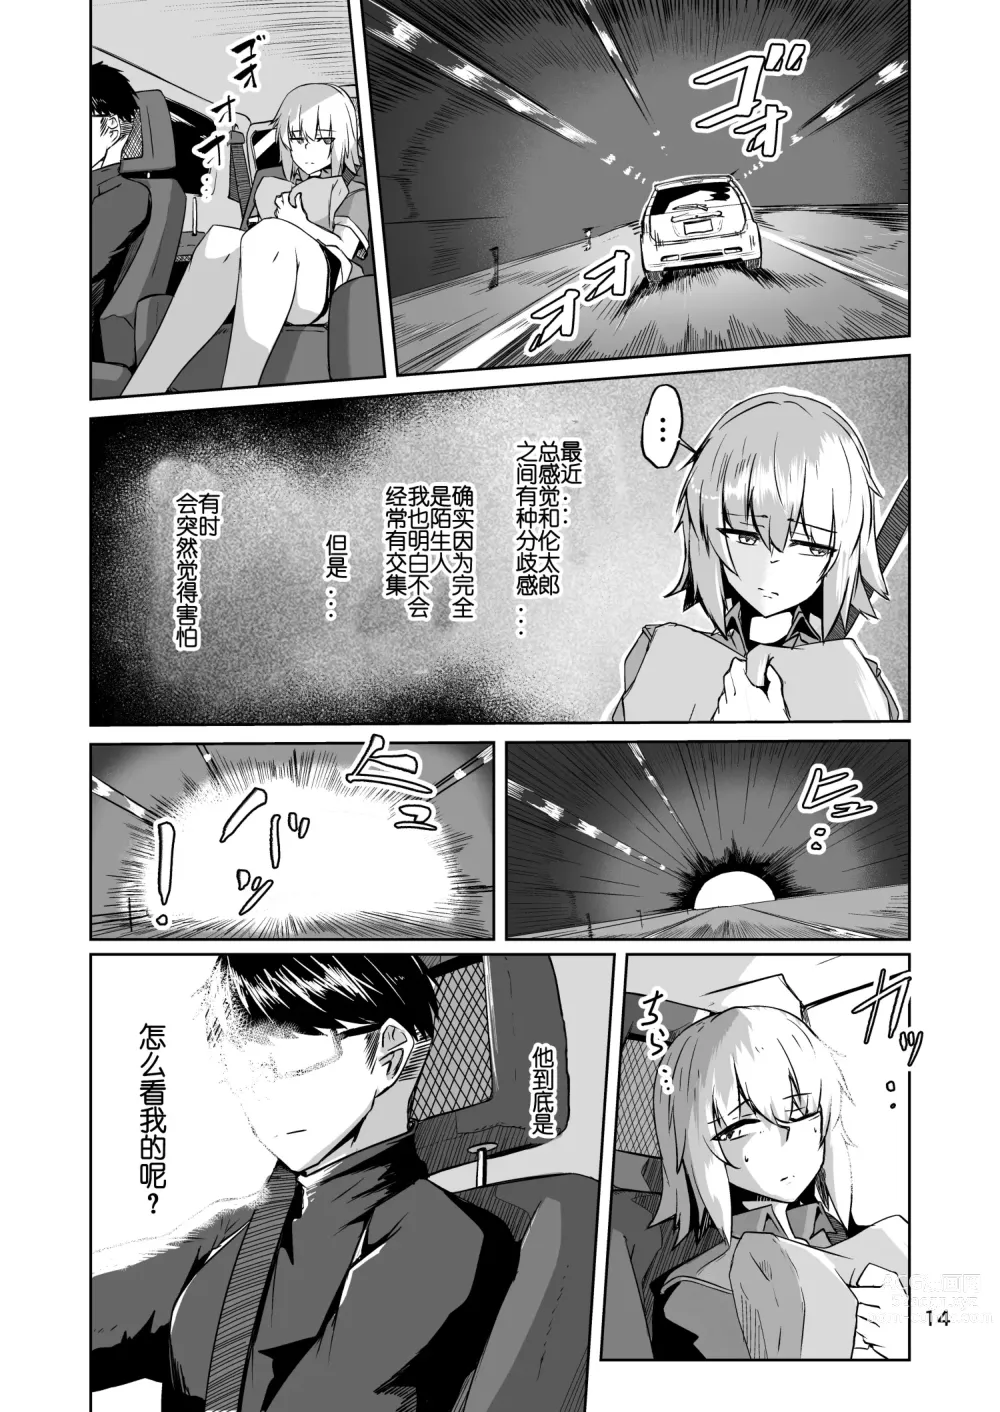 Page 13 of doujinshi Cosplay Uriko no Otomodachi Daigowa: Otomodachi Kara...